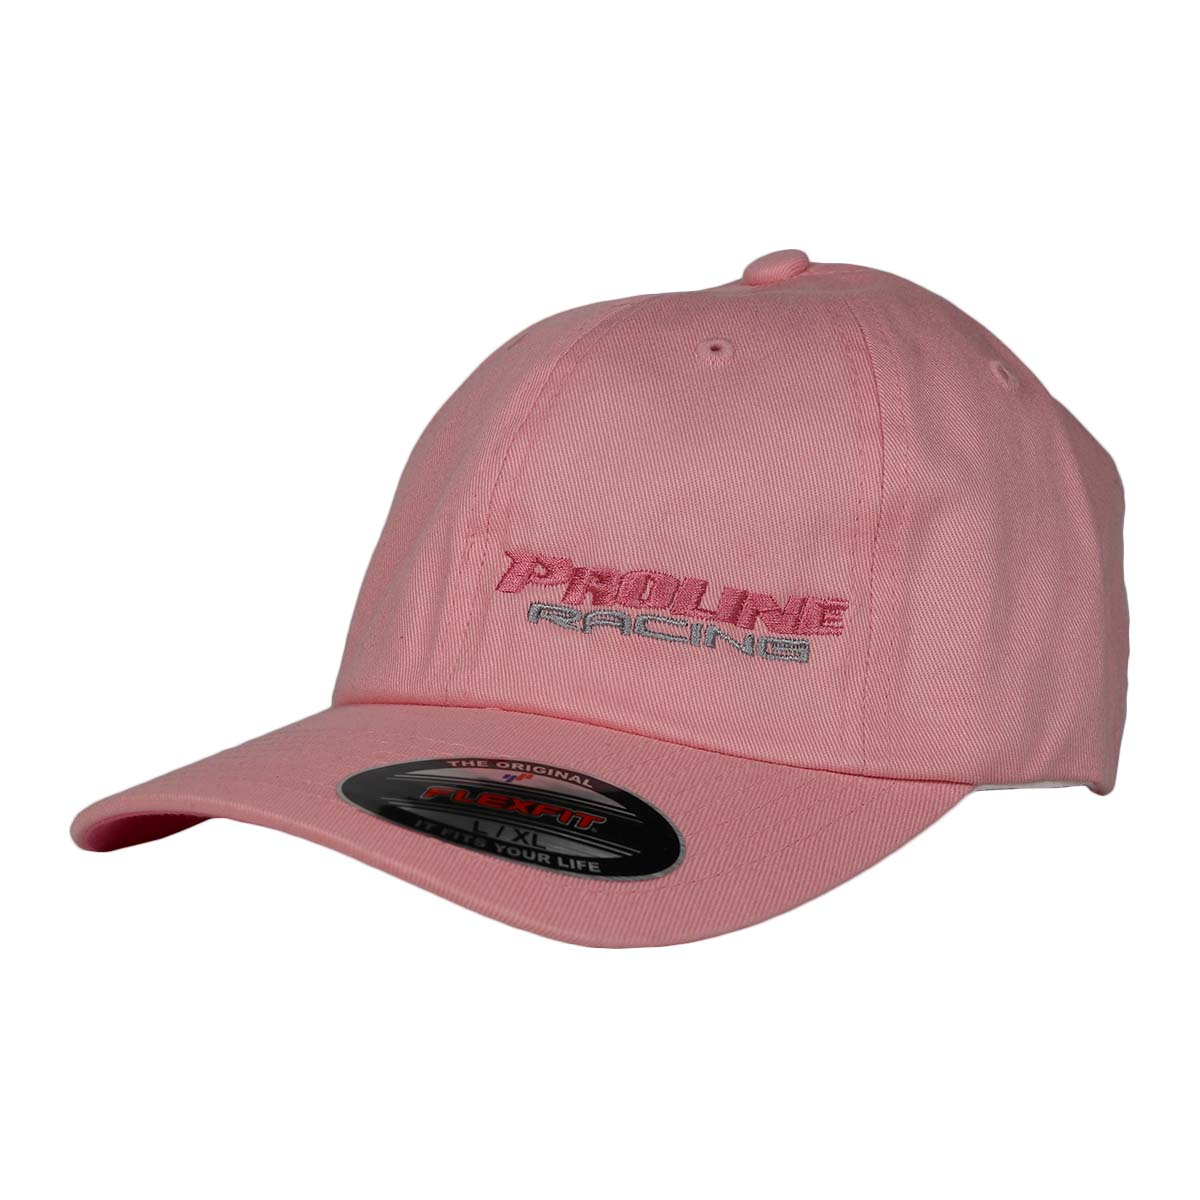 PLR FLEXFIT HAT - BLACK Pro LETTERING - HAT Racing W/ PINK Line